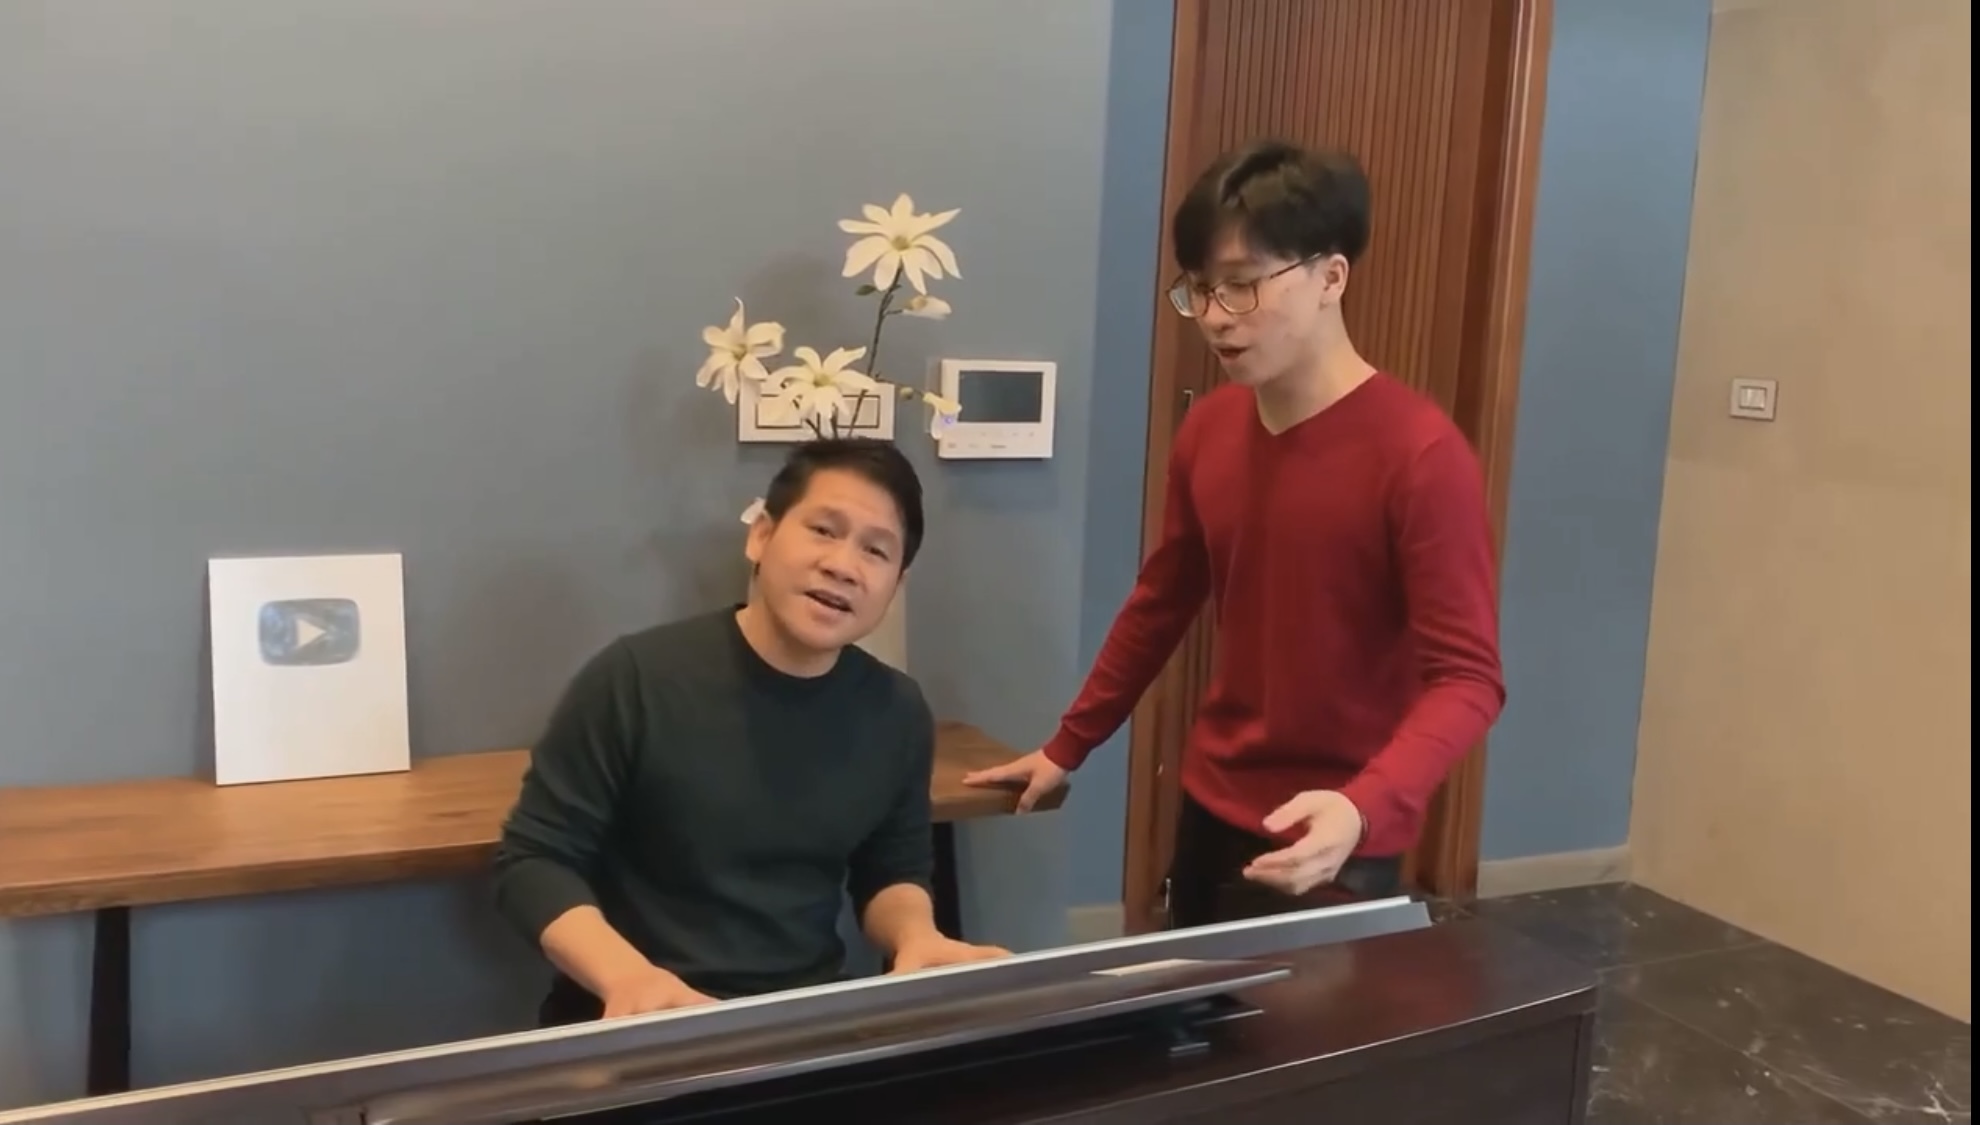 Lần đầu Trọng Tấn hát cùng con trai trên sóng VTV